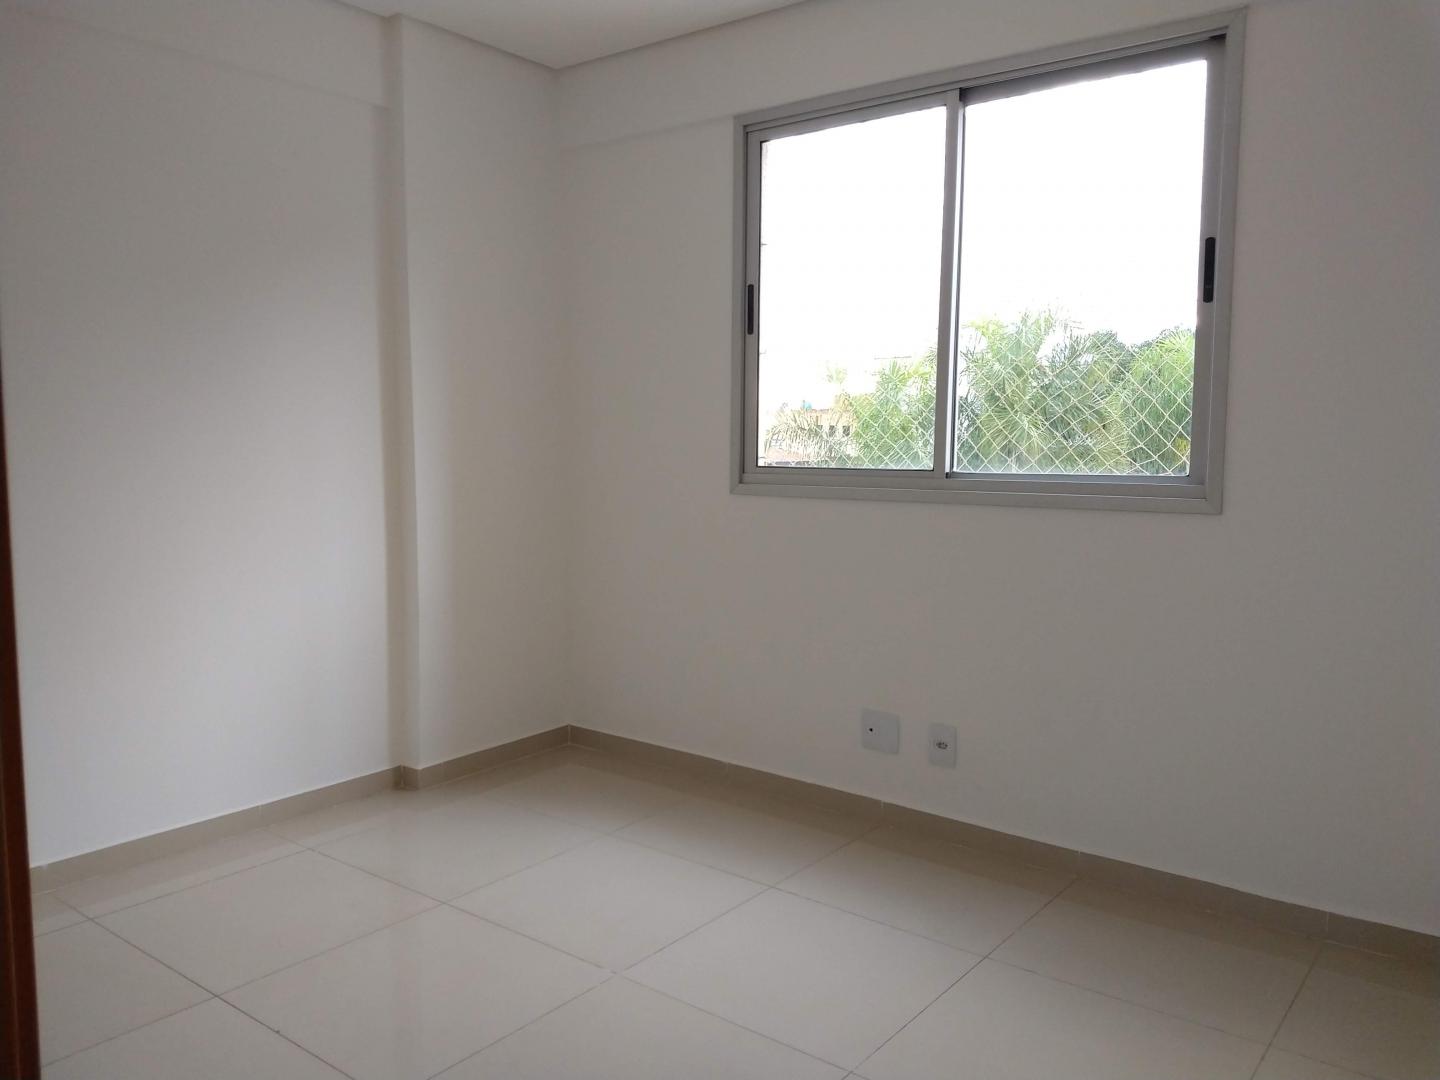 Apartamento 03 quartos, Guará, Brasília/ DF.